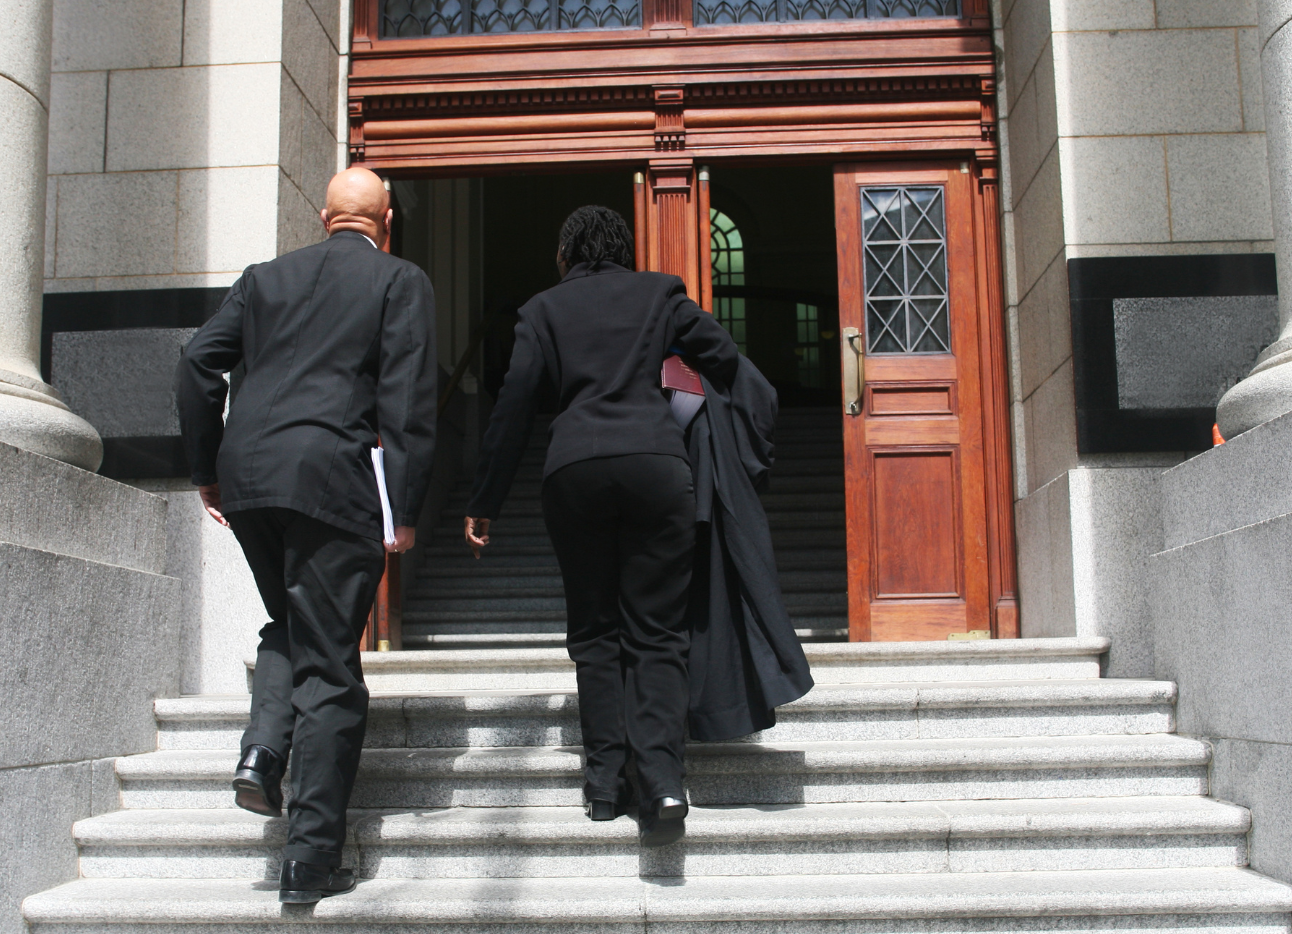 Two people in suits walking towards a court door.